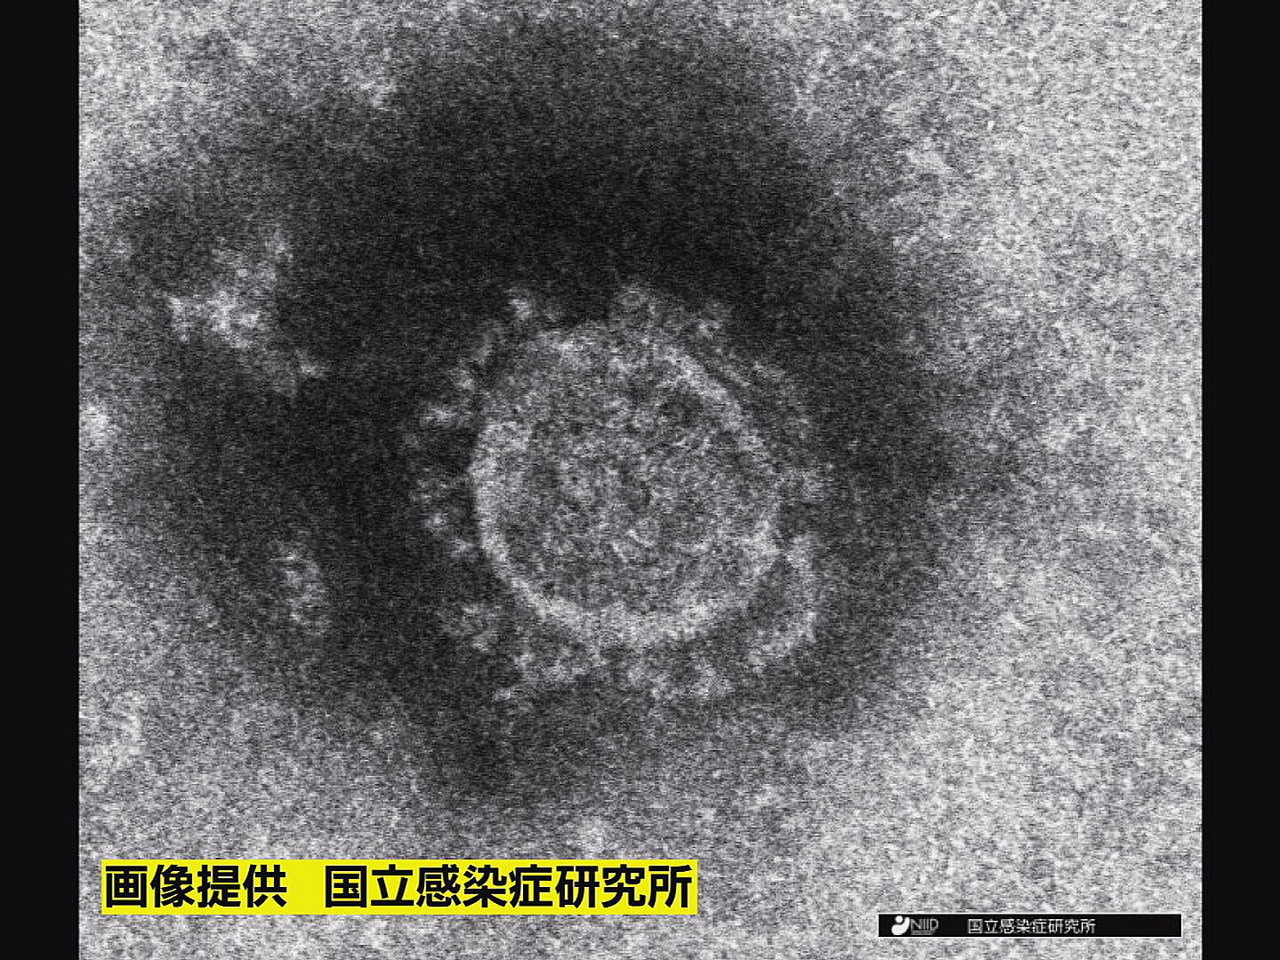 岐阜県は２５日、新型コロナウイルスの新規感染者が ５５６人確認されたと発表しまし...